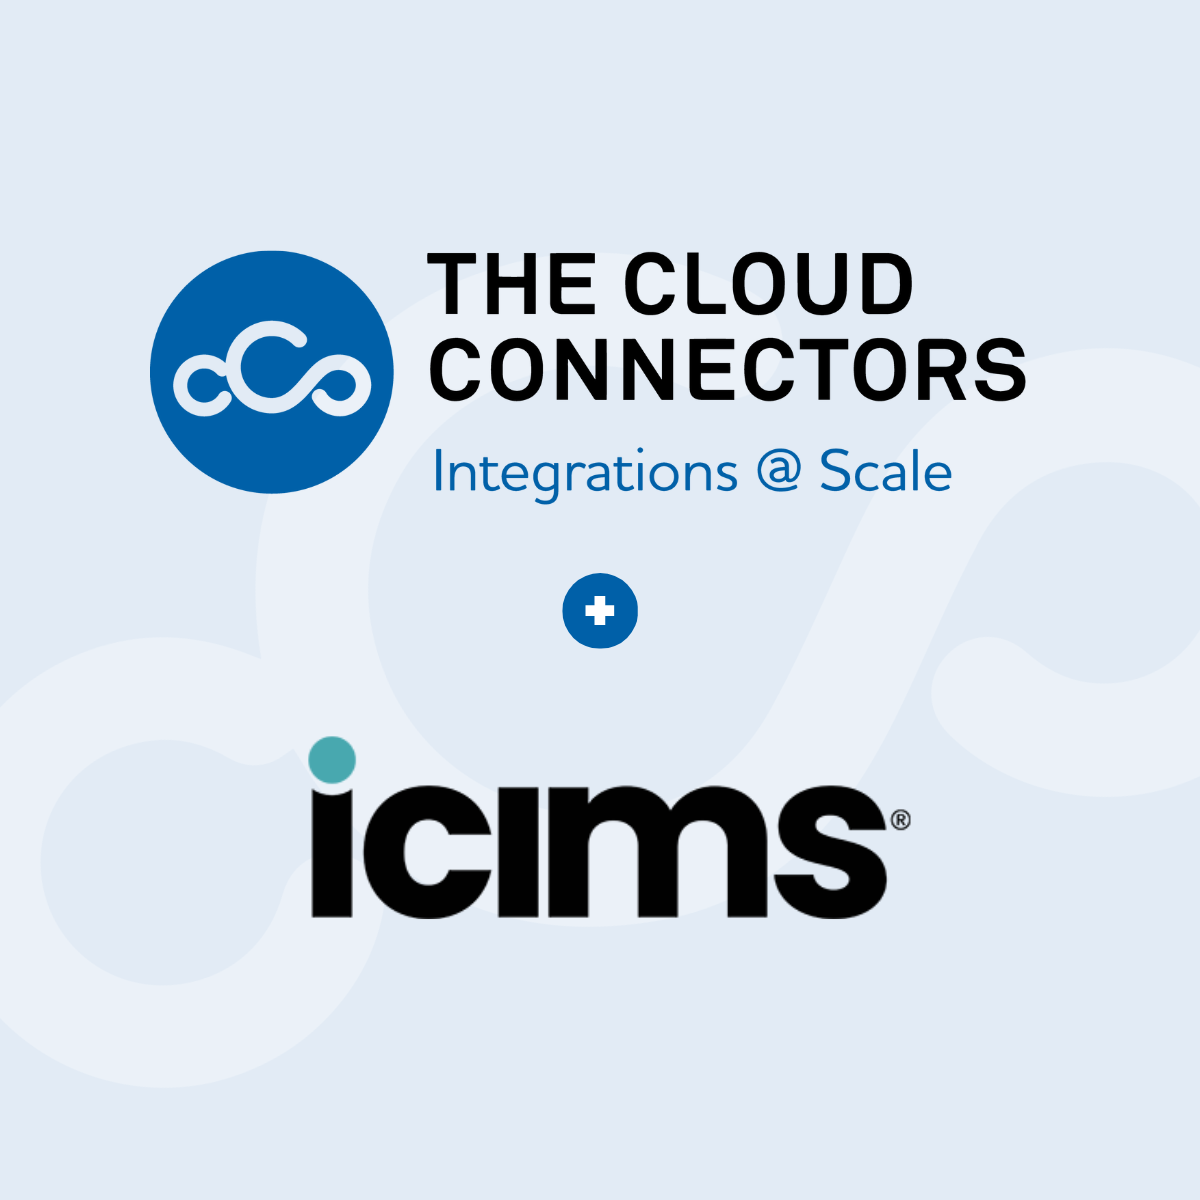 thecloudconnectors-iCIMS-partnership-announcement